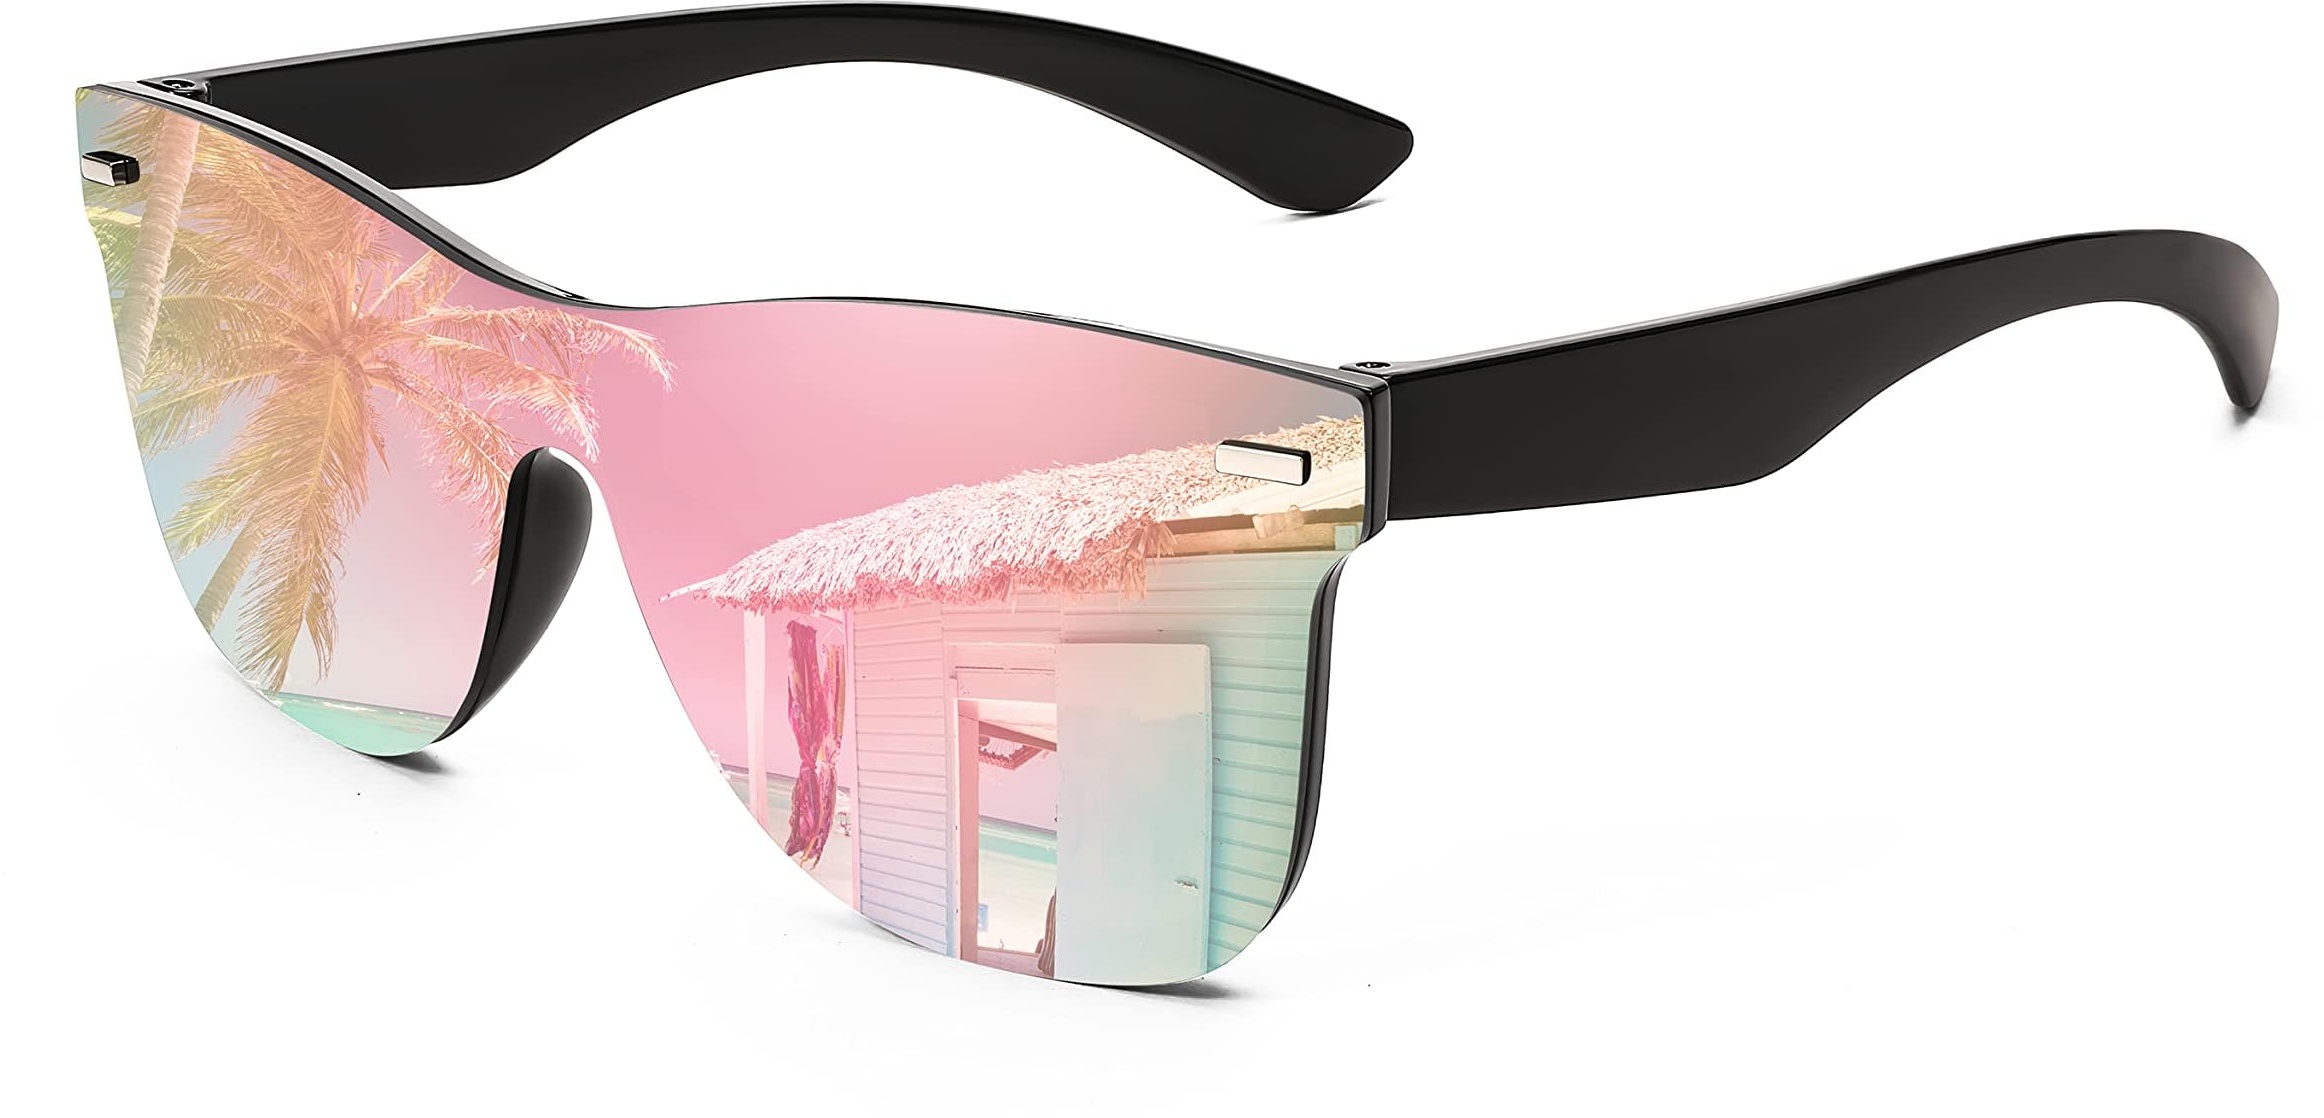 FEISEDY Randlose Sonnenbrille Verspiegelt Herren Damen One Piece Dunkle Gläser mit UV400 Schutz B4114 - L